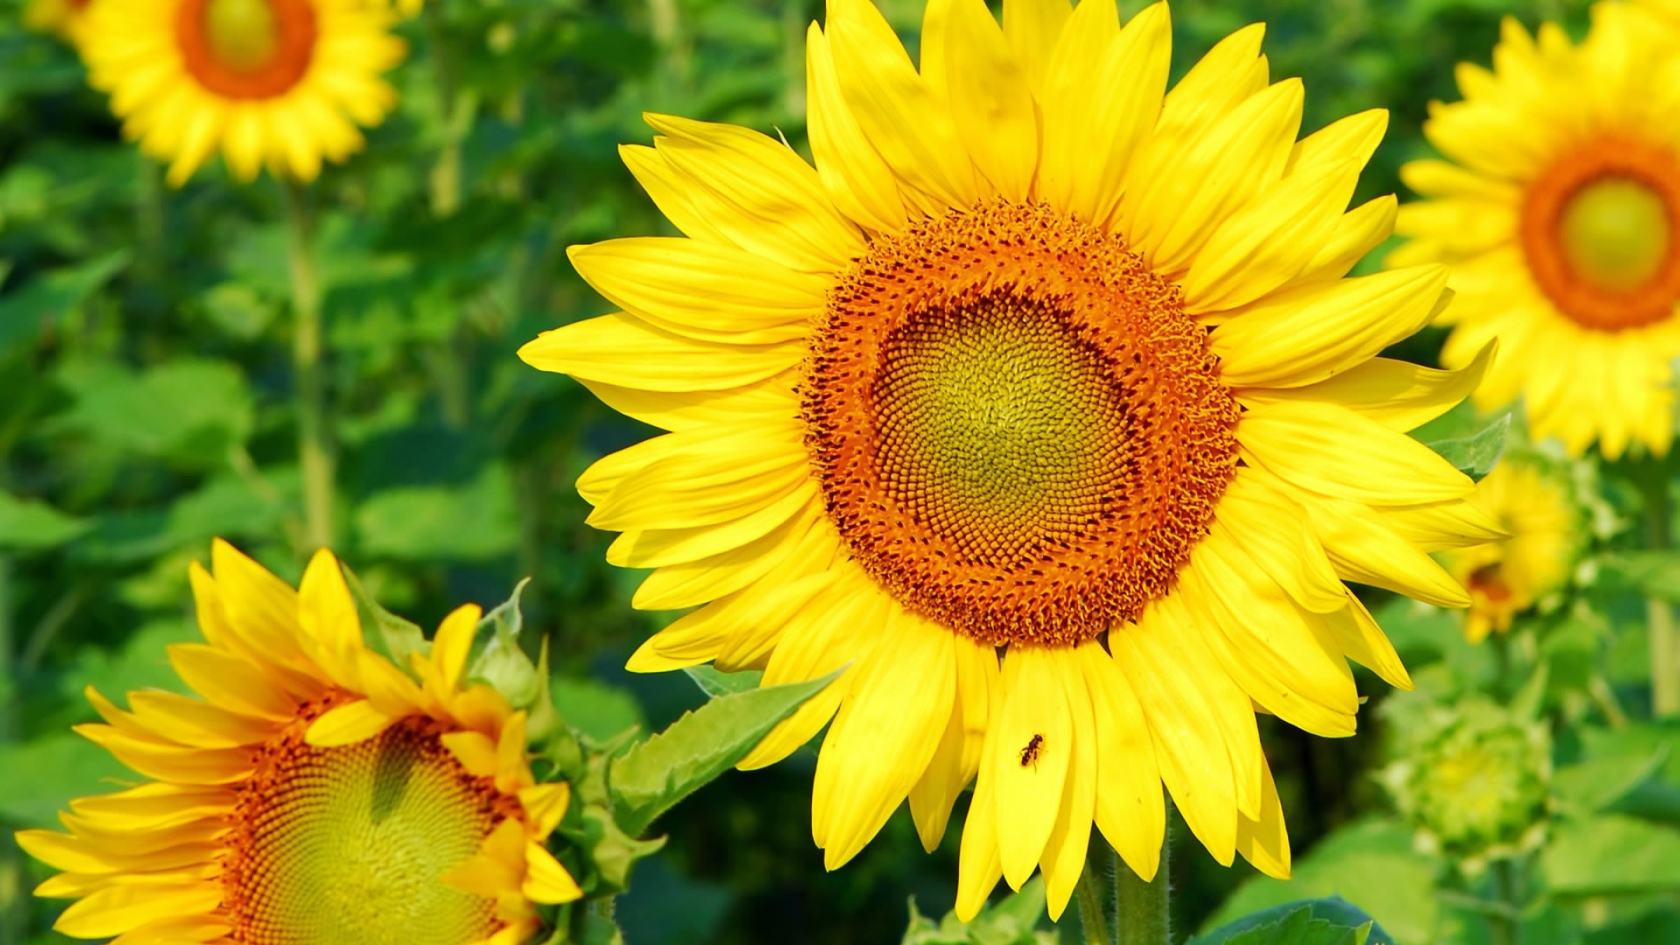 Superb Sunflower for 1680 x 945 HDTV resolution